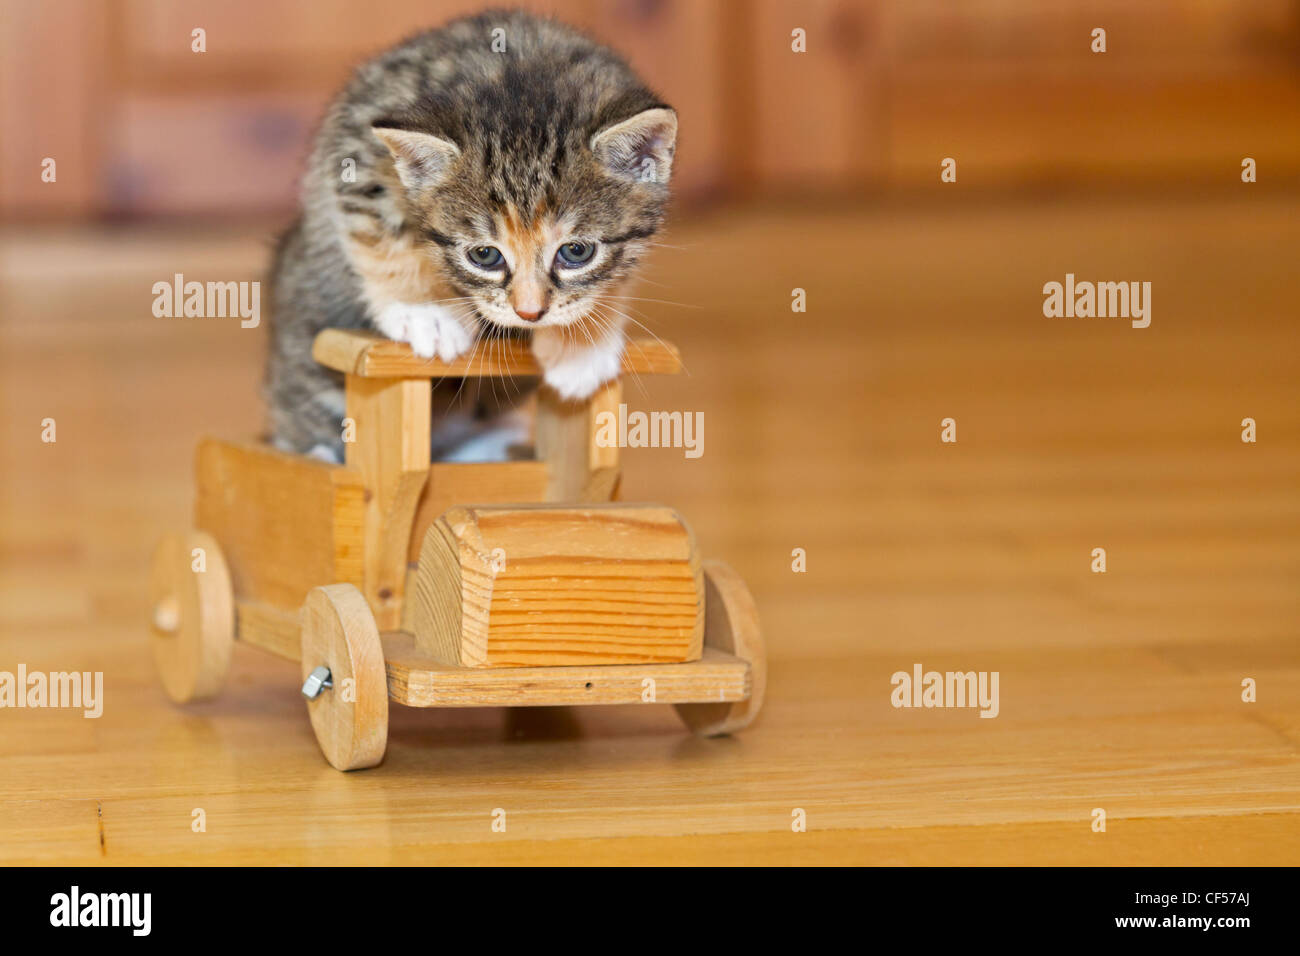 Germania, gattino seduto sul giocattolo di legno, close up Foto Stock